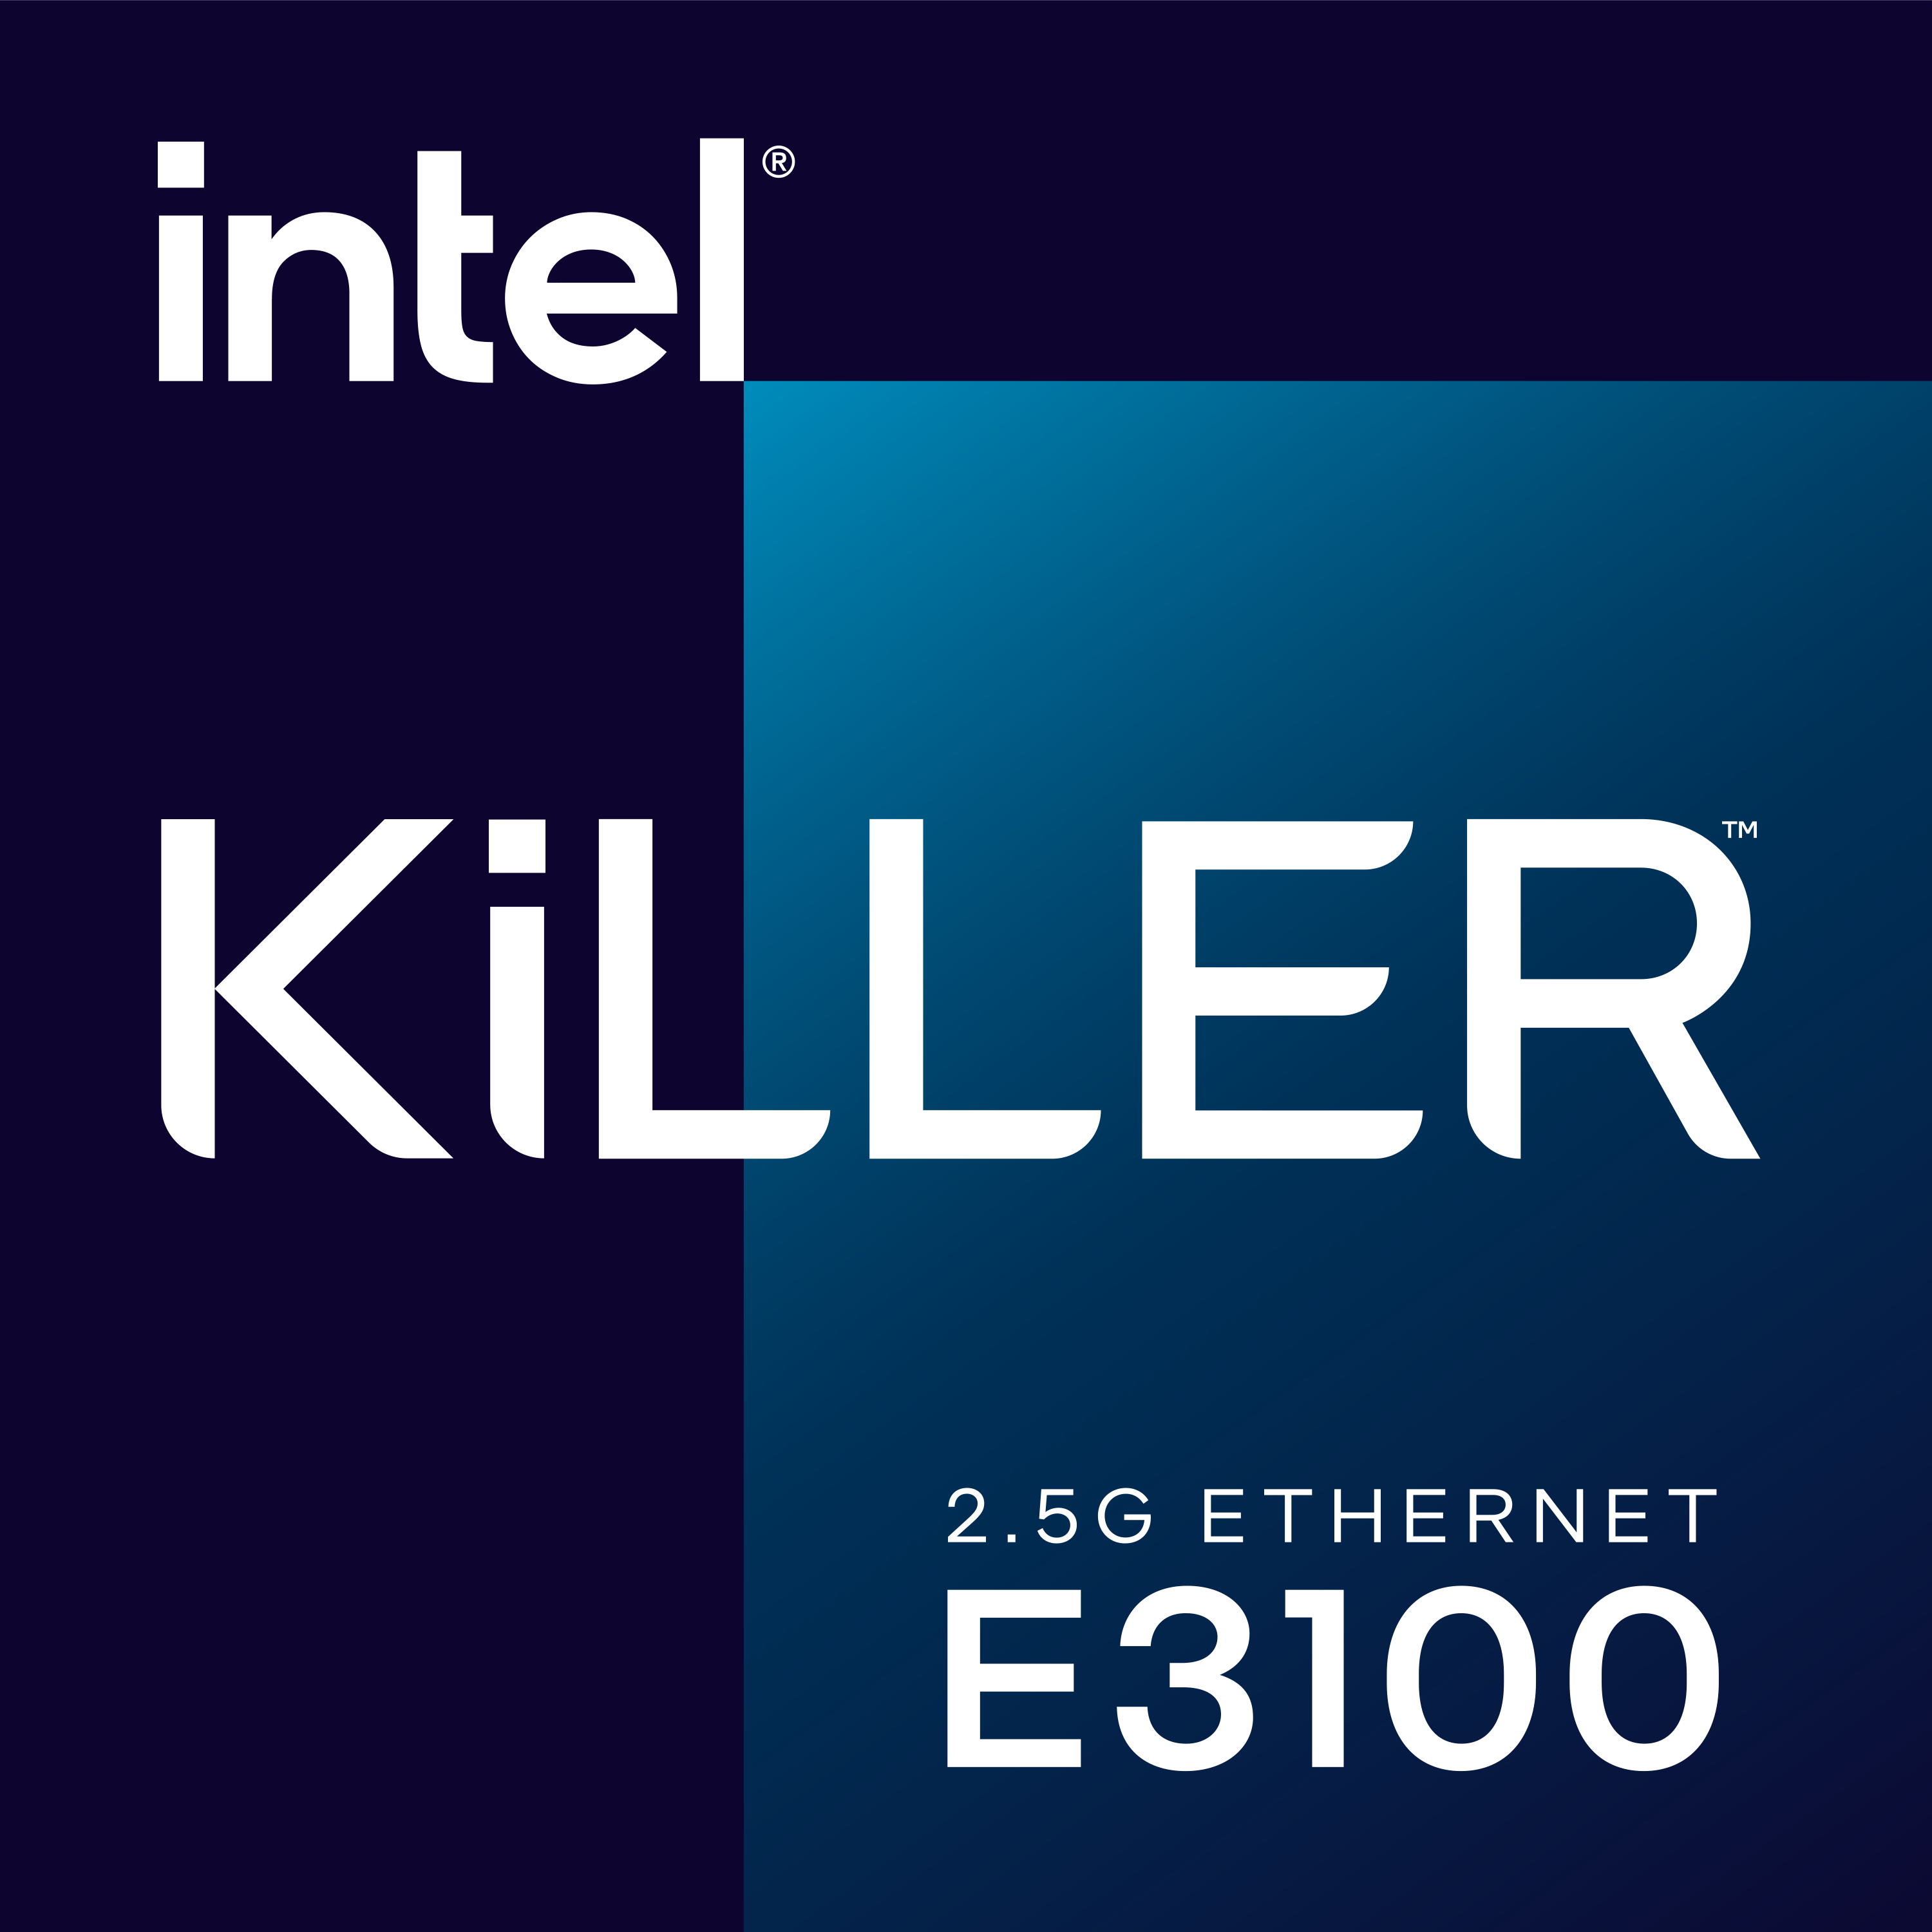 intel-killer-25g-ethernet-e3100